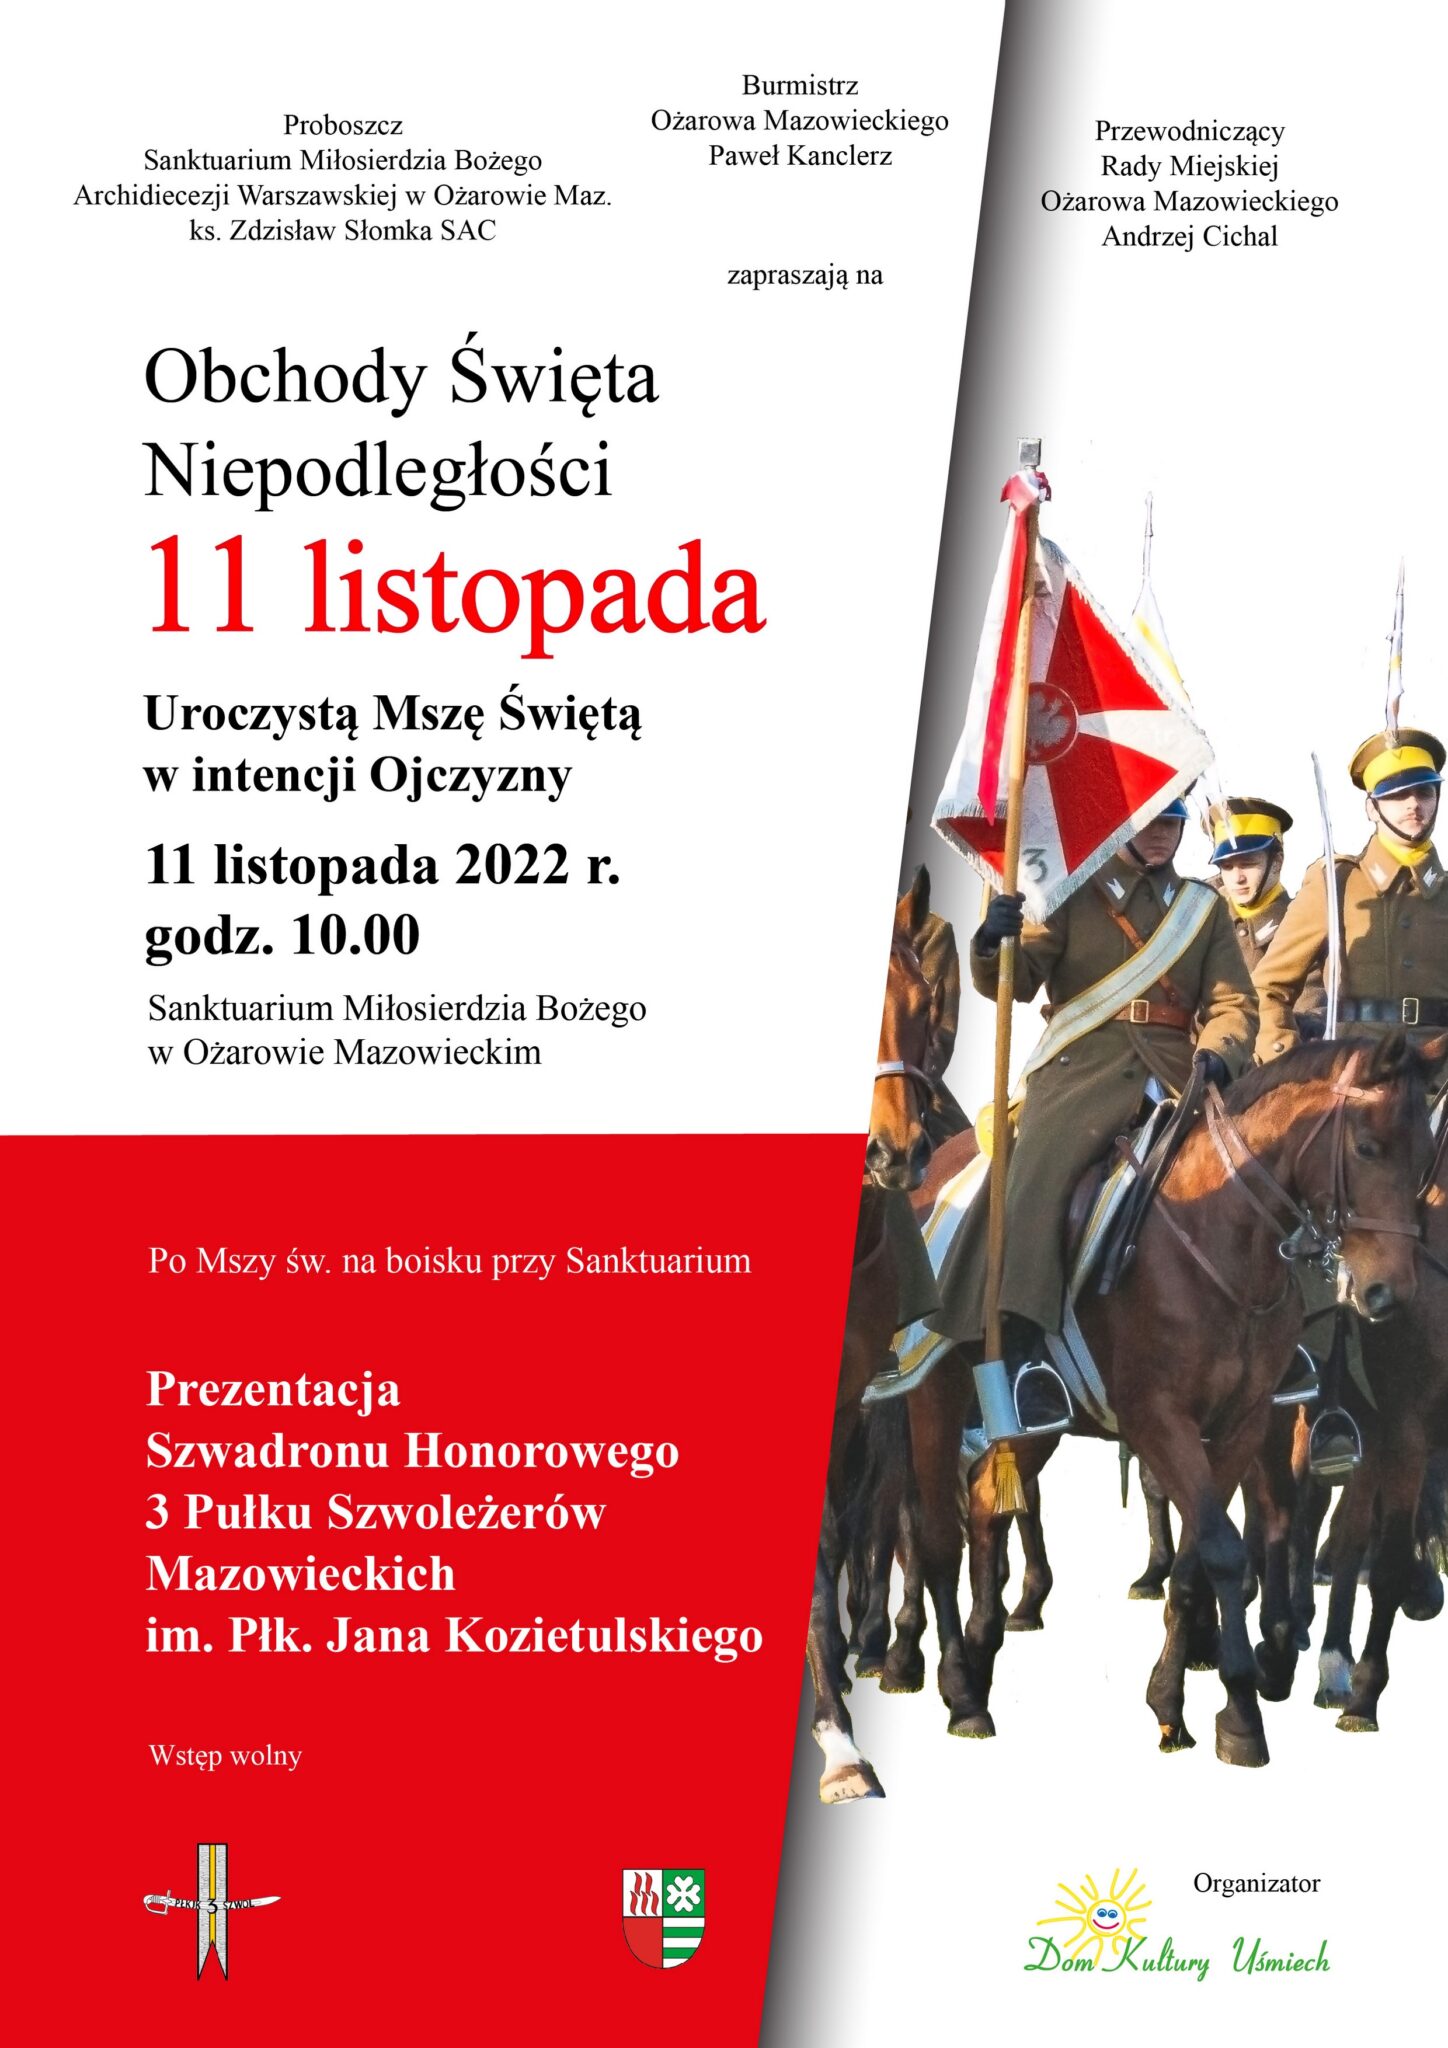 Plakat informujący o wydarzeniach 11 listopada w Ożarowie Mazowieckim